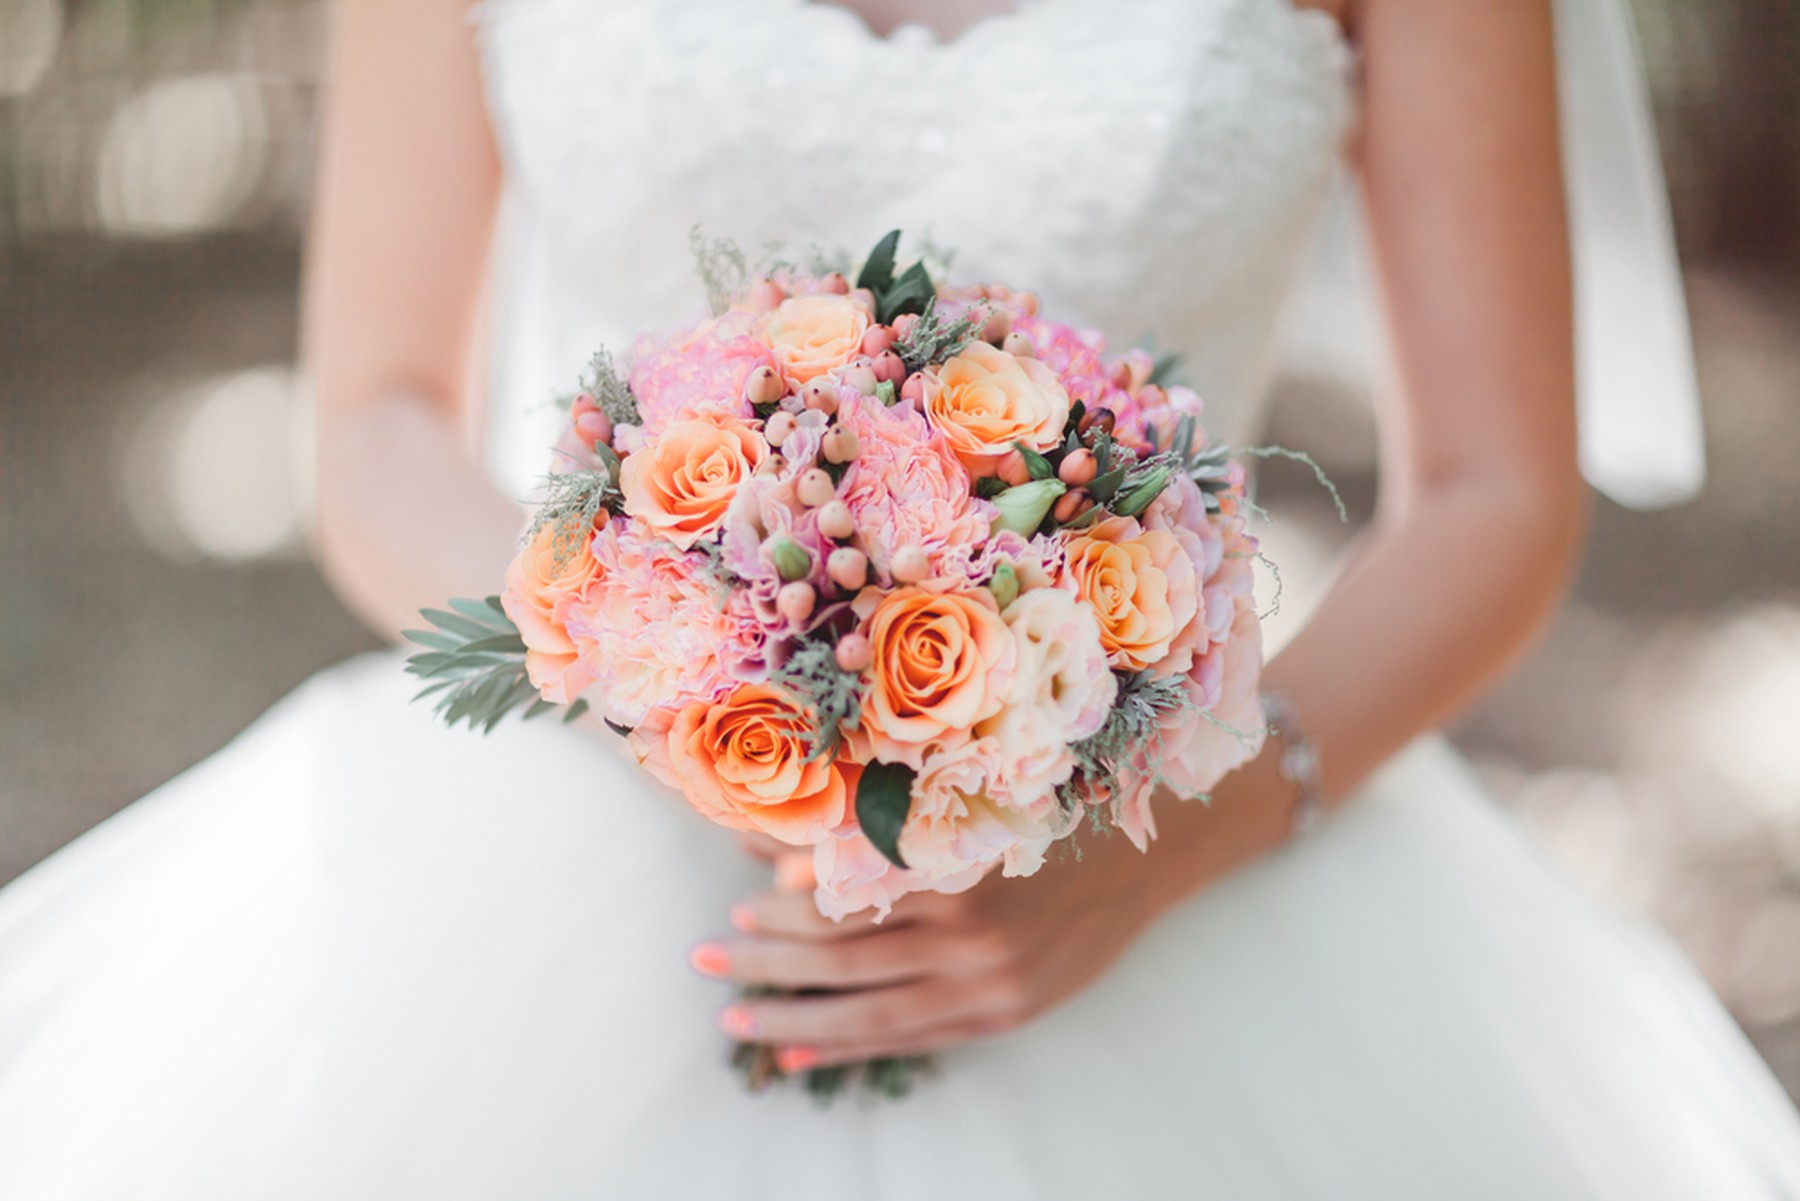 Ramo de flores de novia en tonos rosas y naranjas en primer plano. El ramo lo sujeta la novia, que se ve de fondo su vestido blanco y las uñas pintadas de rosa